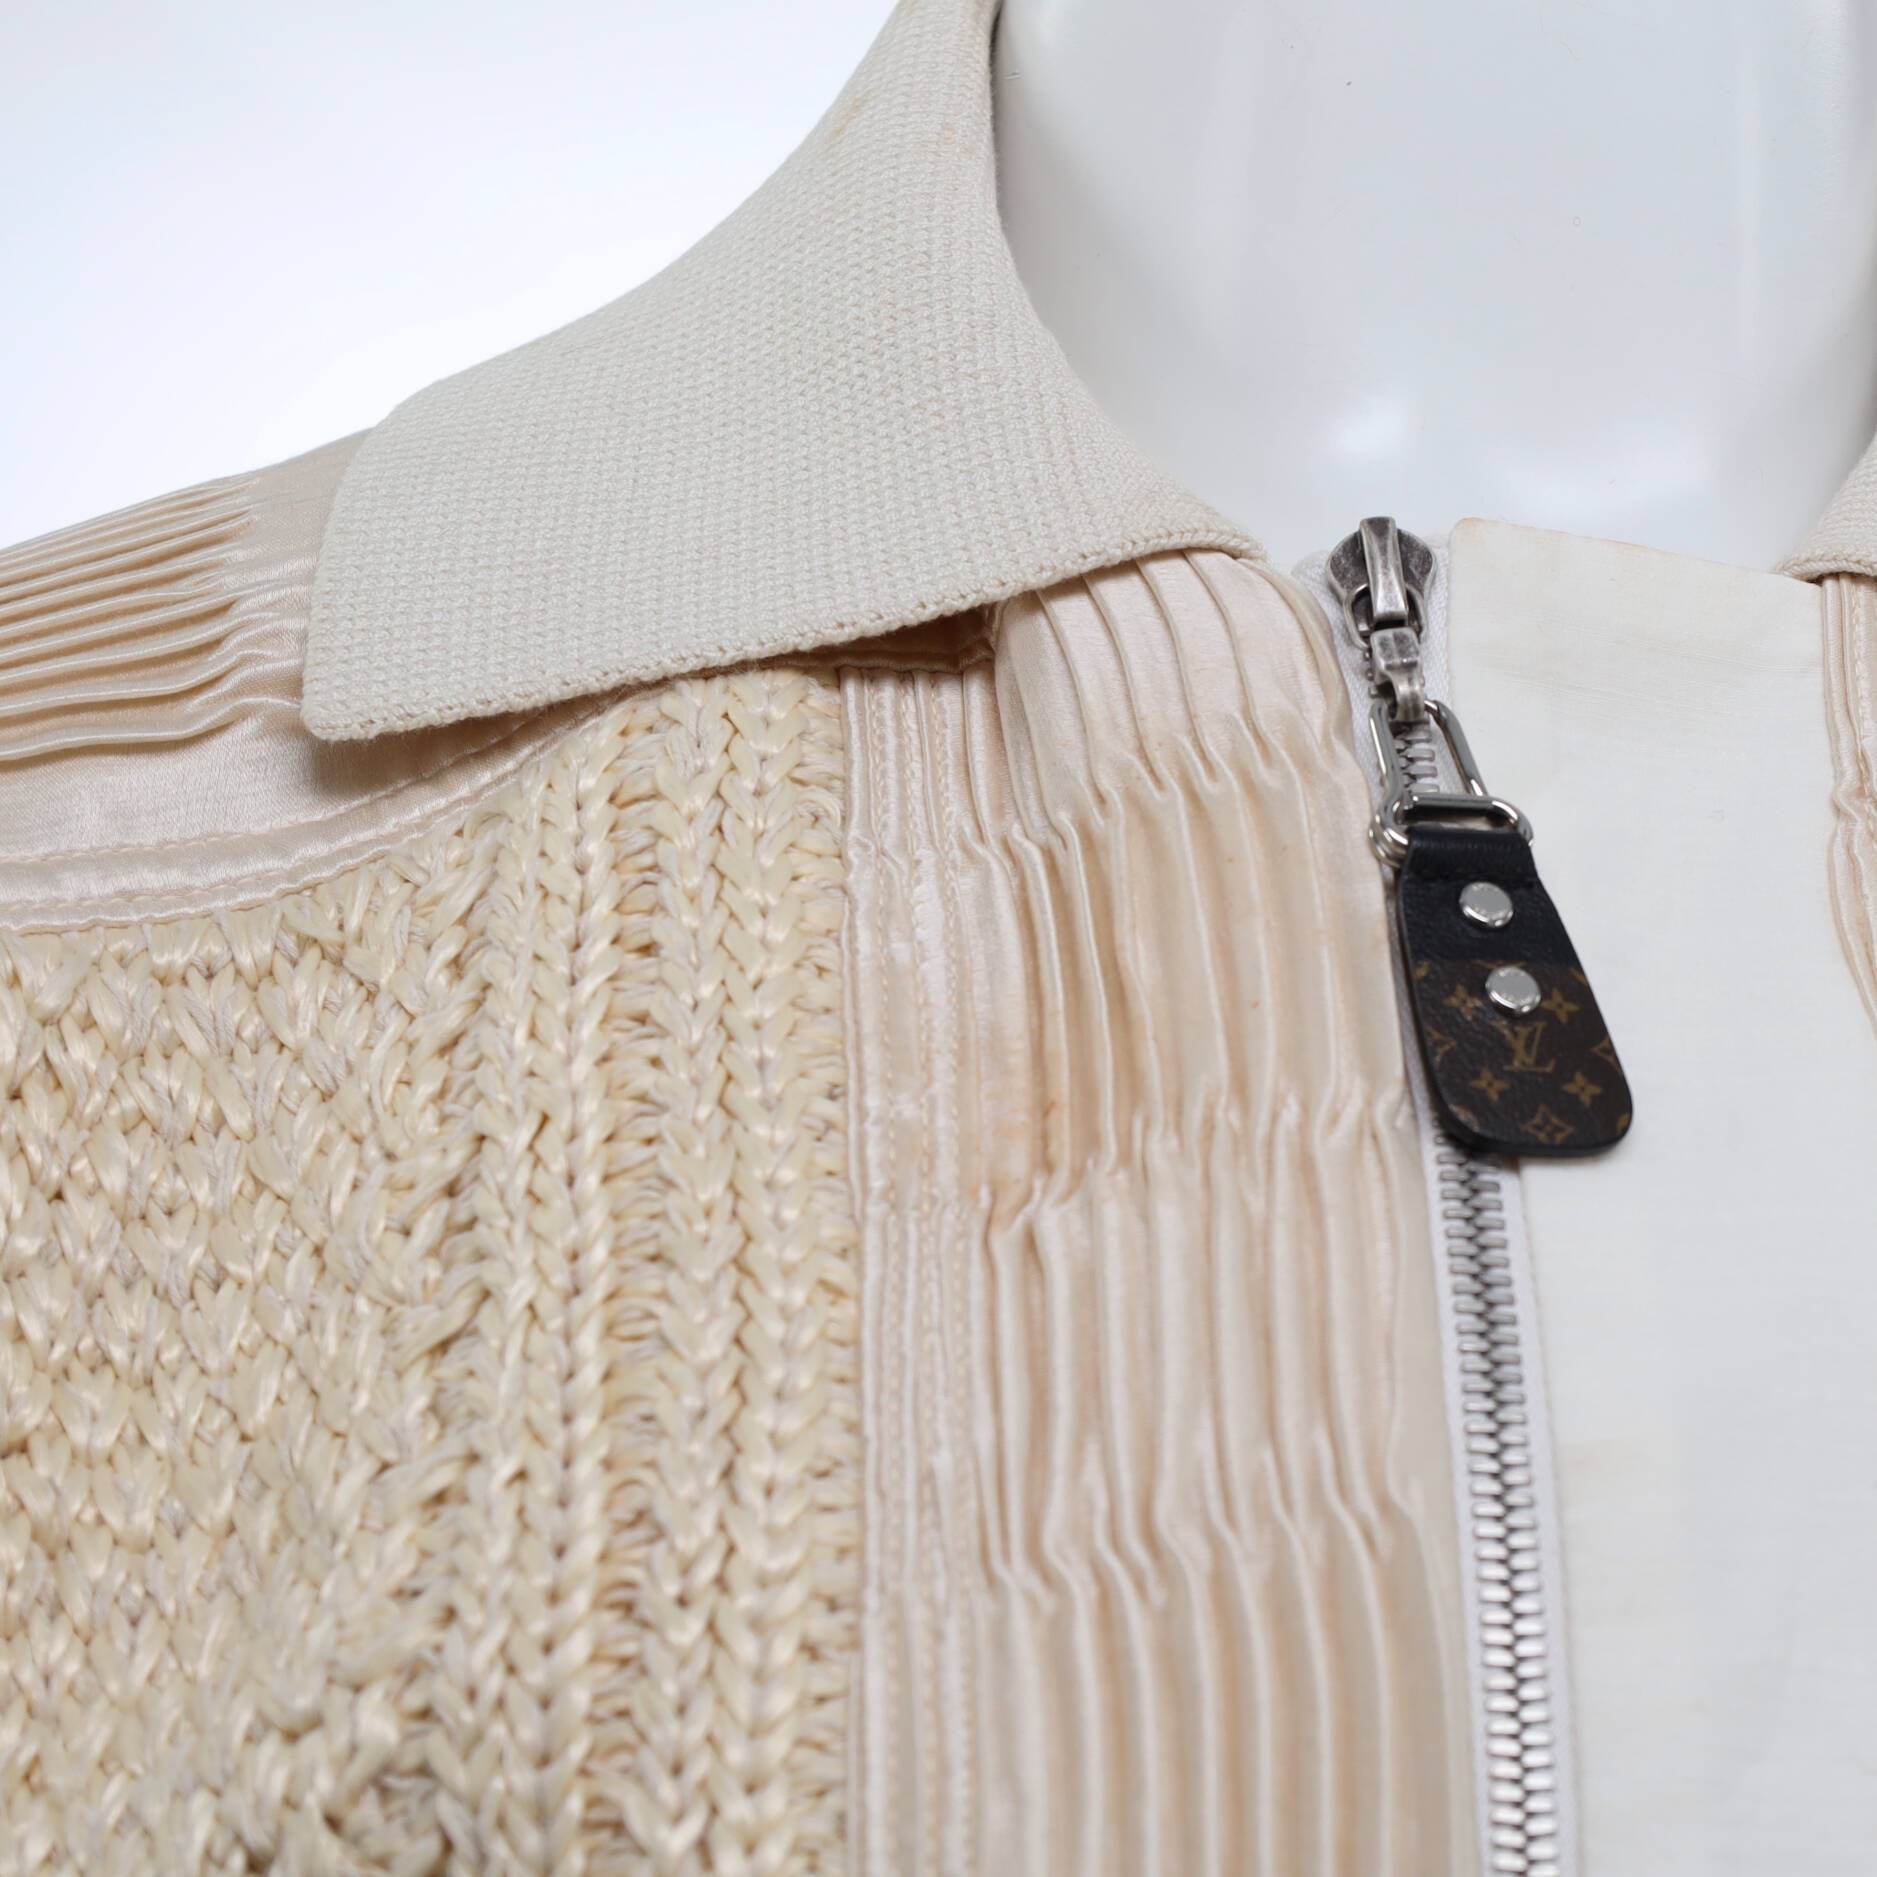 Louis Vuitton Damier Wool Zip-Through Cardigan IVORY. Size M0